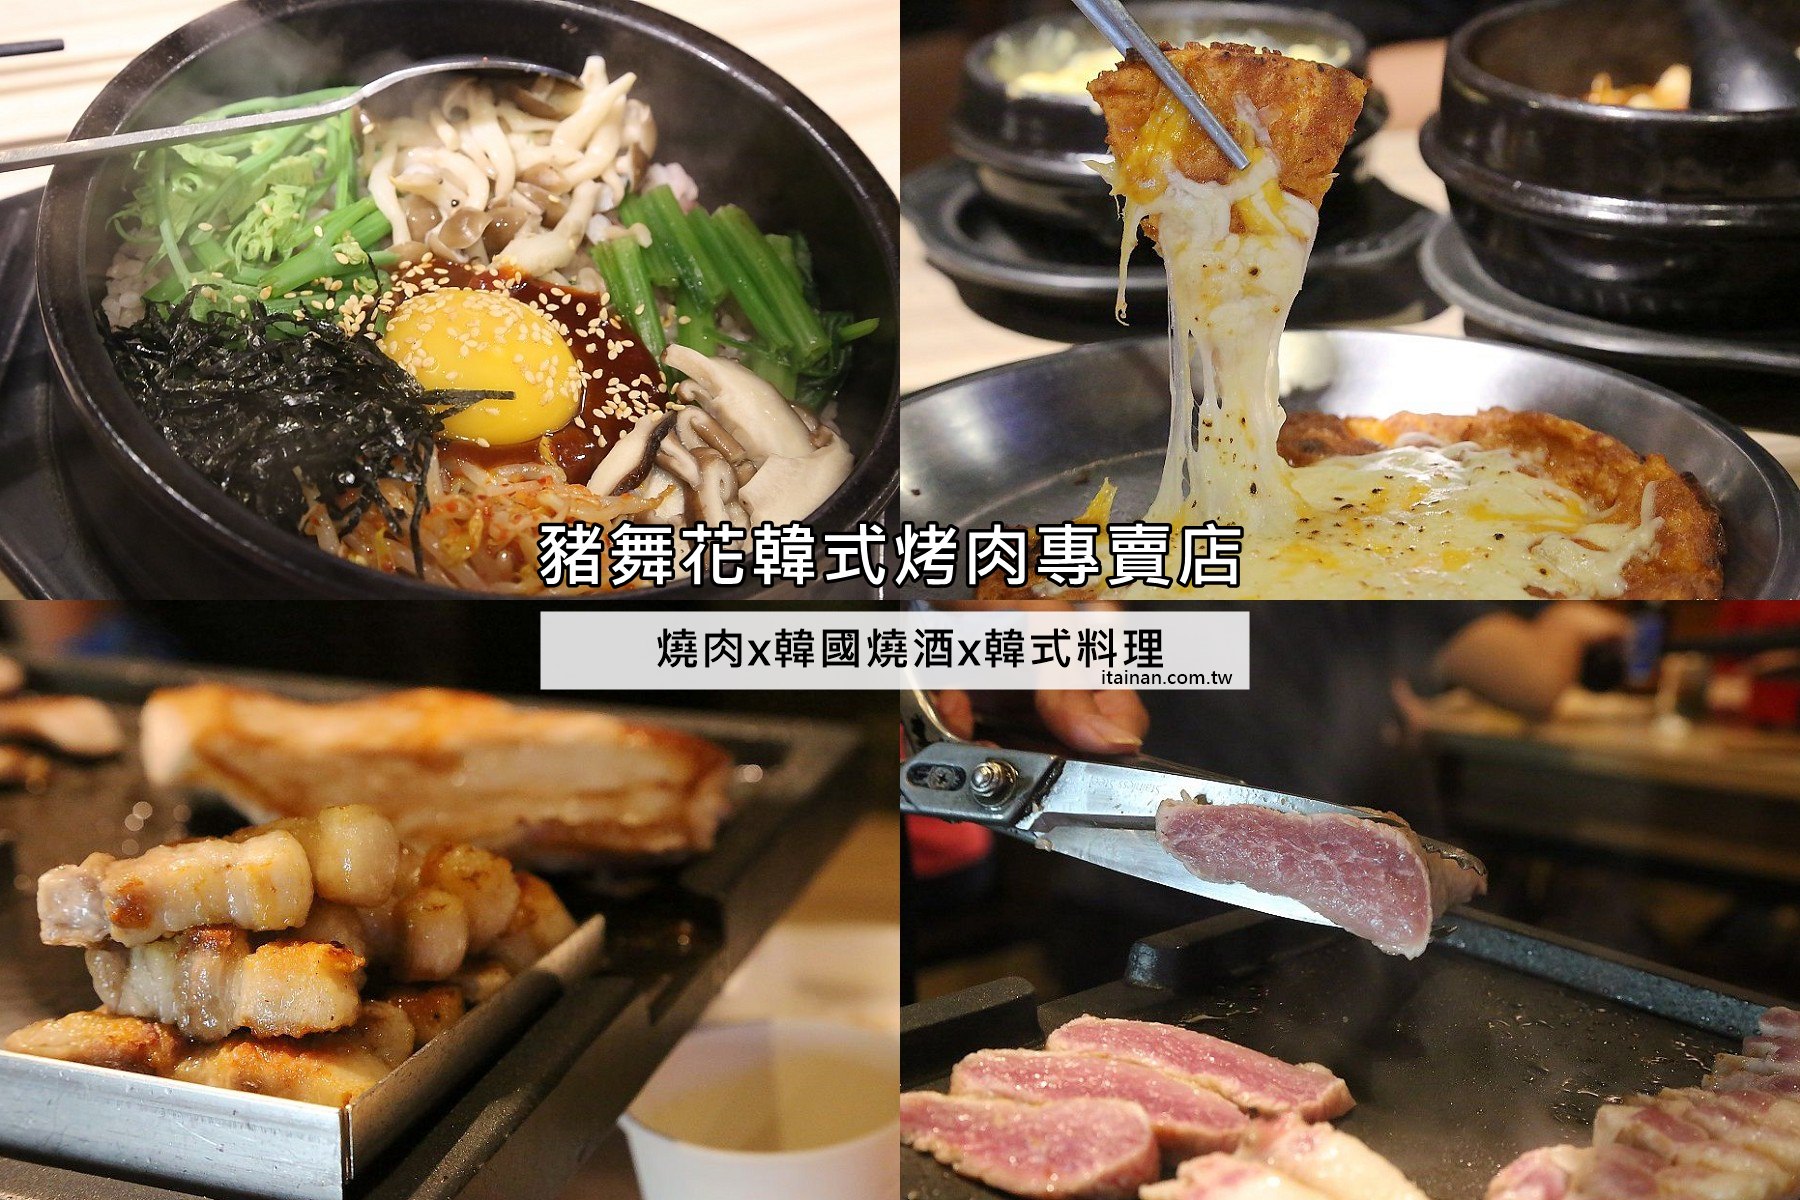 台南燒烤,韓式燒肉,台南燒肉,燒肉,燒烤